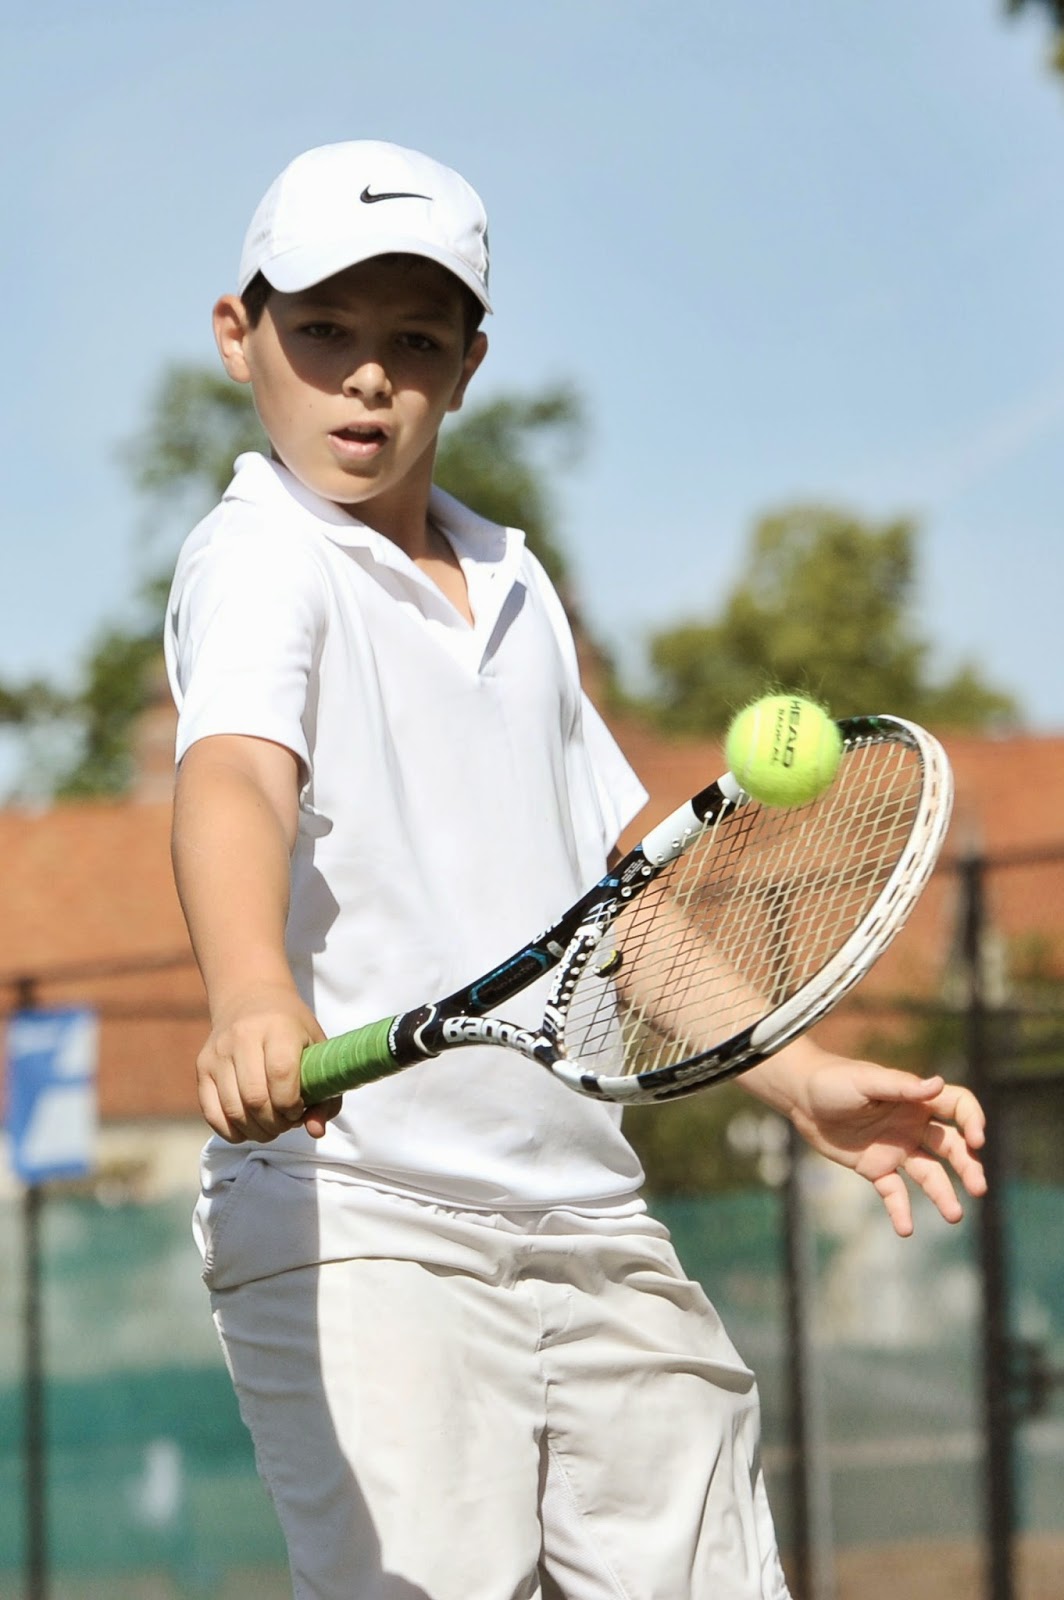 Теннис для похудения: Польза и вред тенниса, теннис для похудения